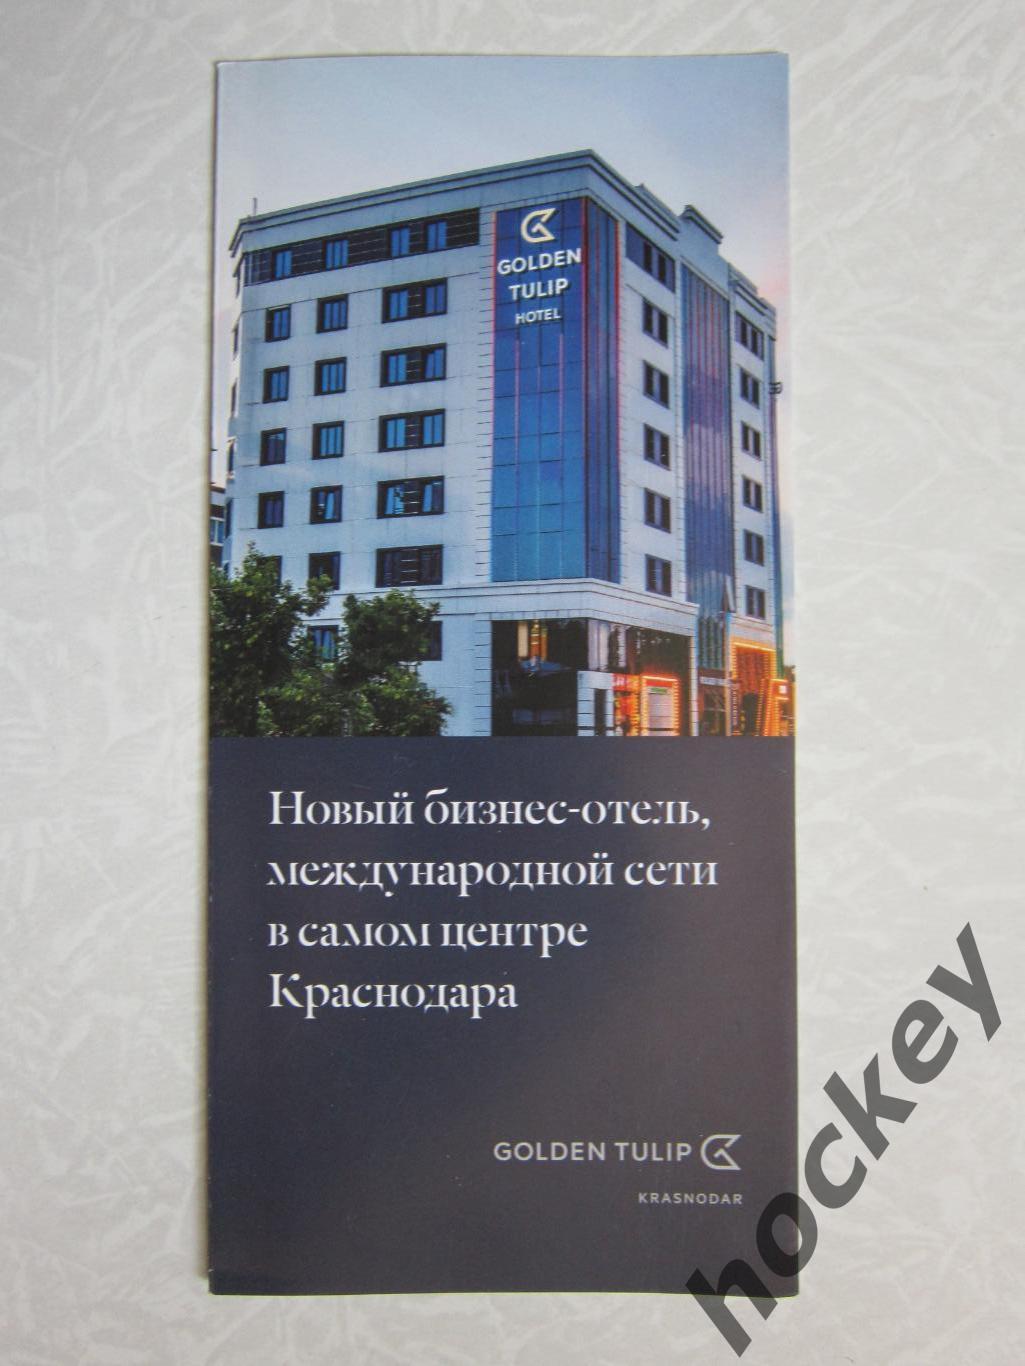 Краснодар. Golden Tulip Hotel. Новый бизнес-отель в самом центре Краснодара